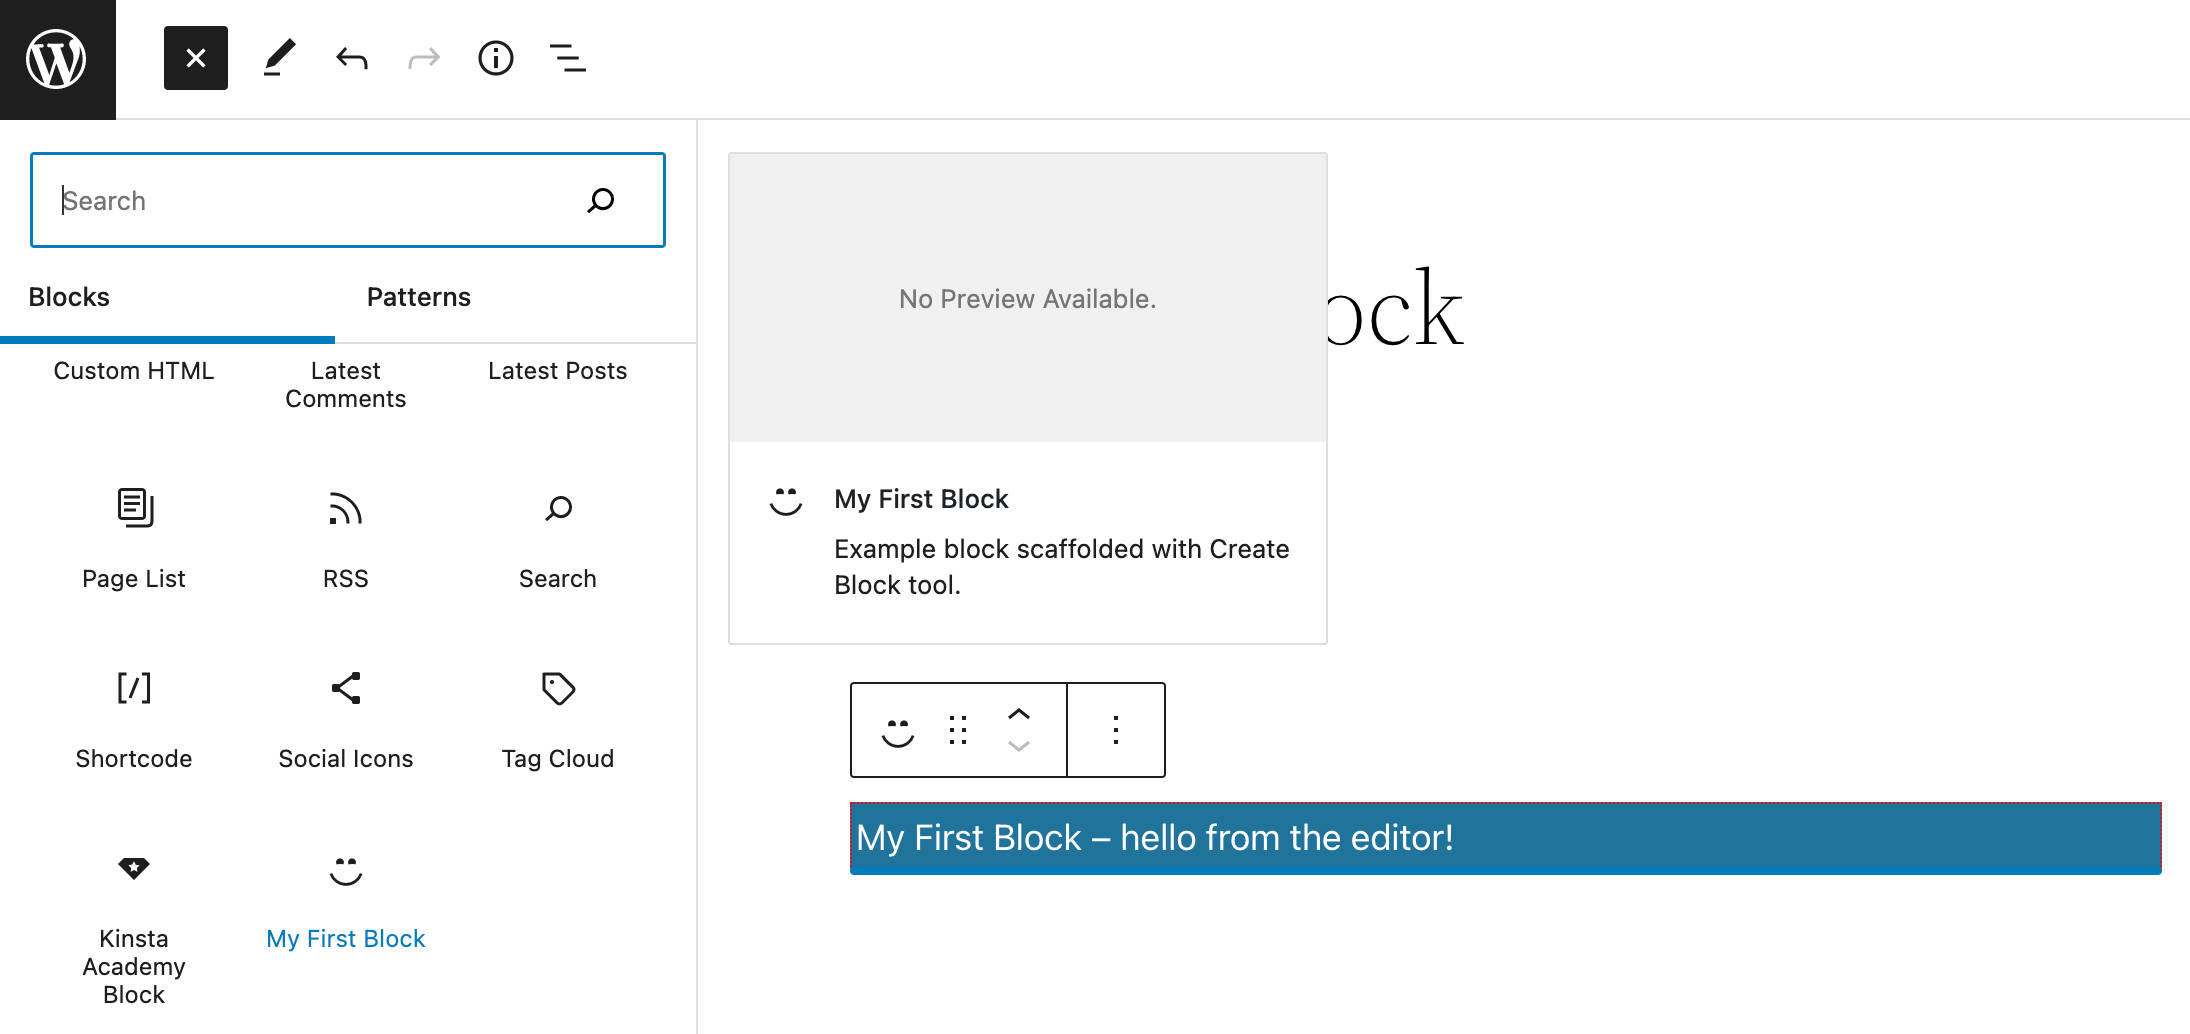 Ett exempelblock som är skapat med @wordpress/create-block.